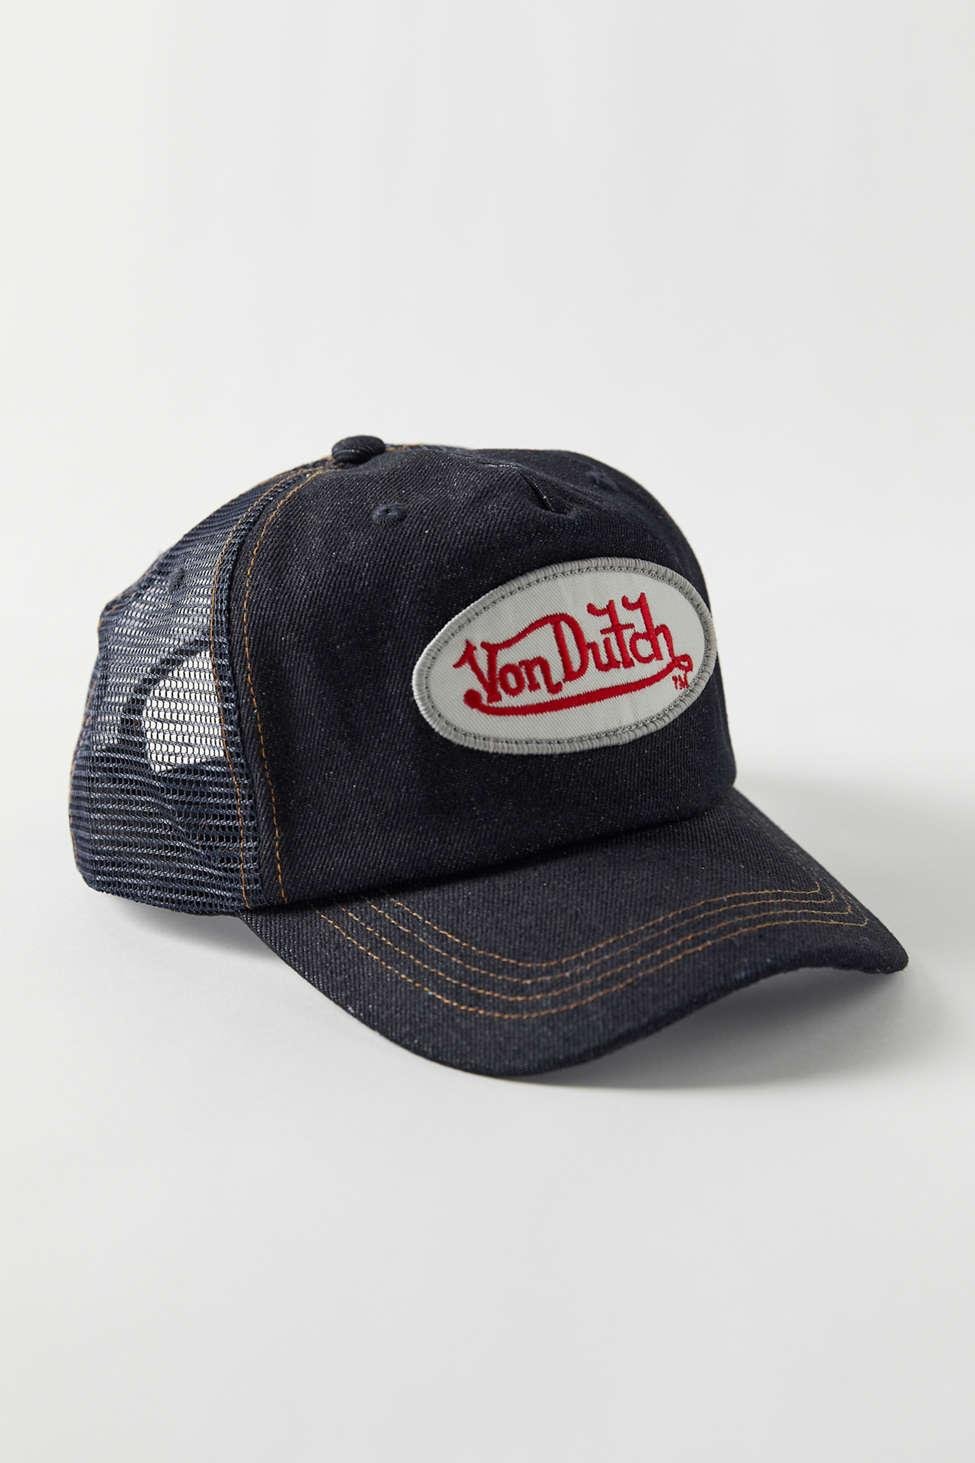 Urban Outfitters Vintage '90s Von Dutch Trucker Hat in Black | Lyst